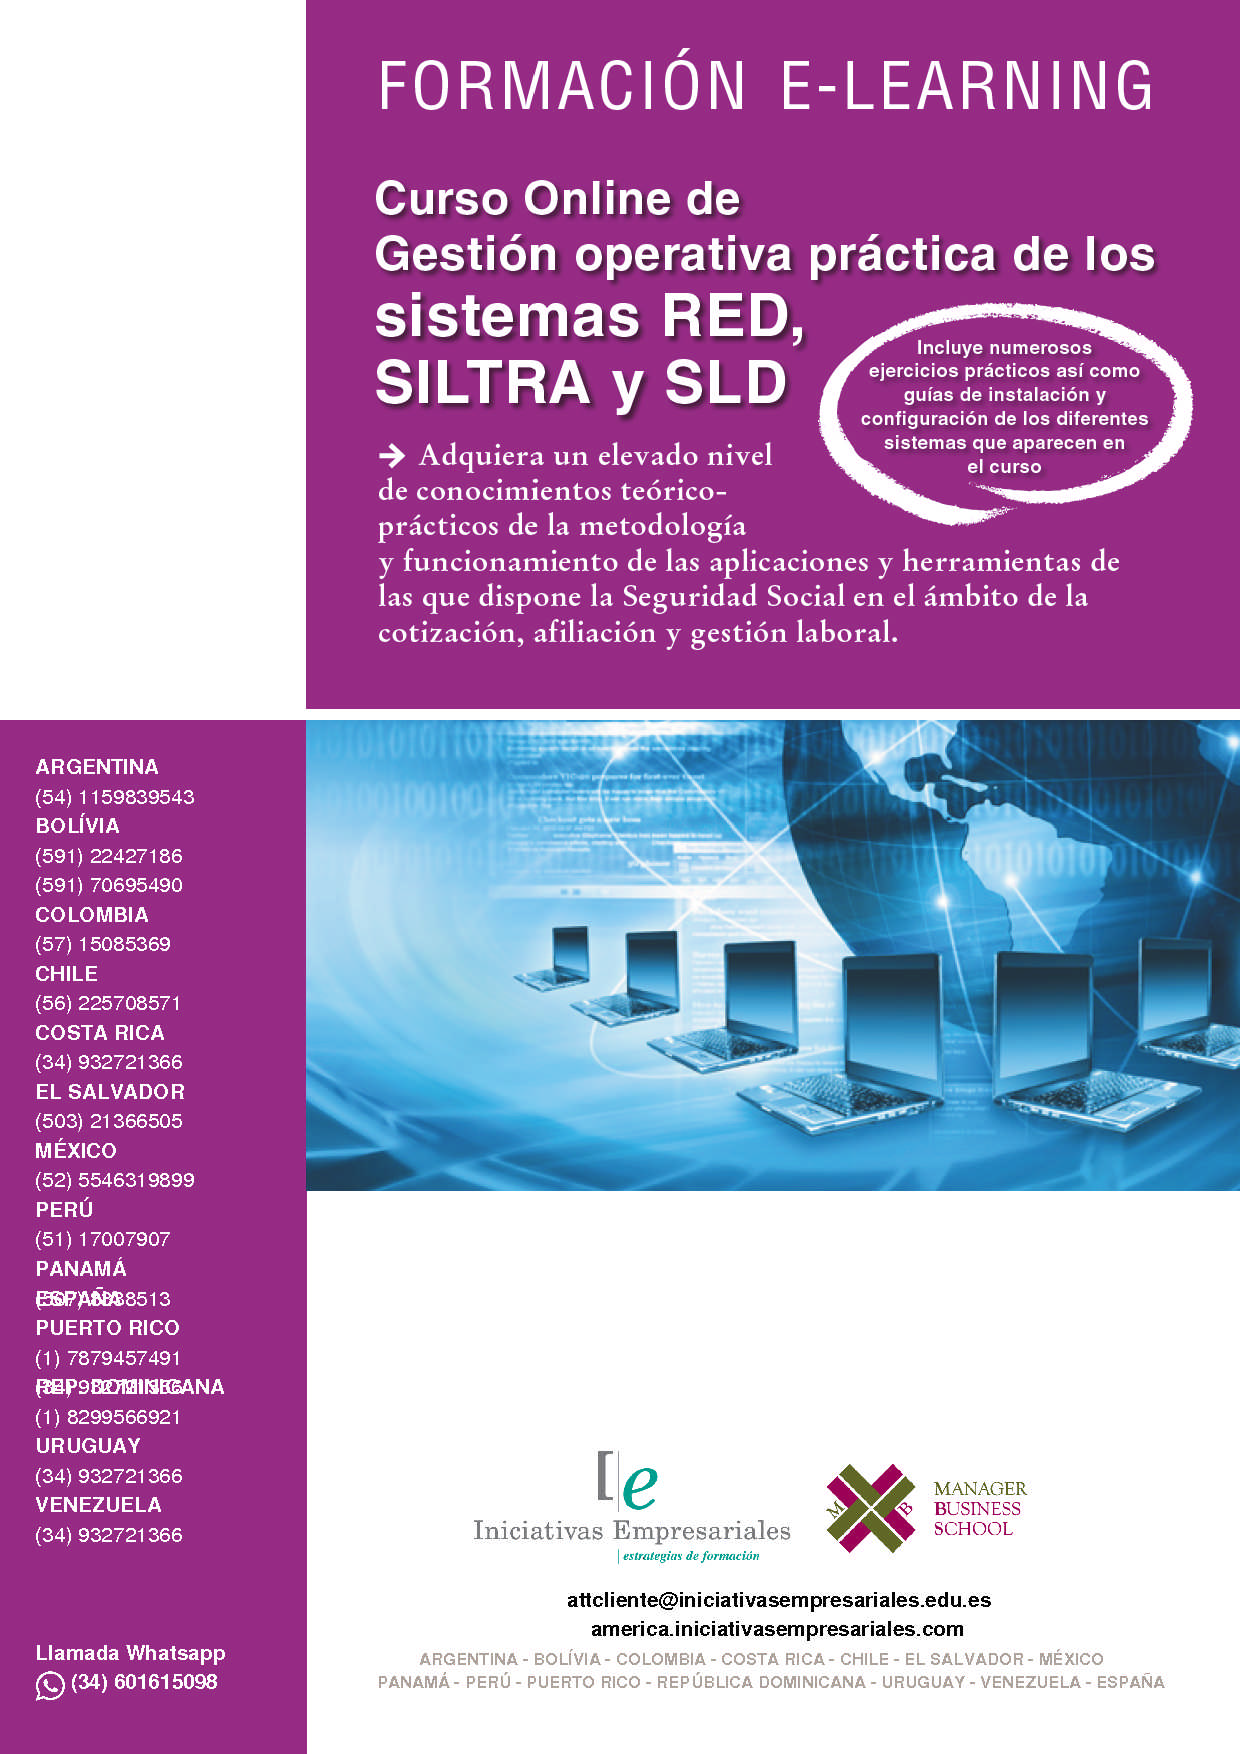 Gestión operativa práctica de los sistemas RED, SILTRA y SLD